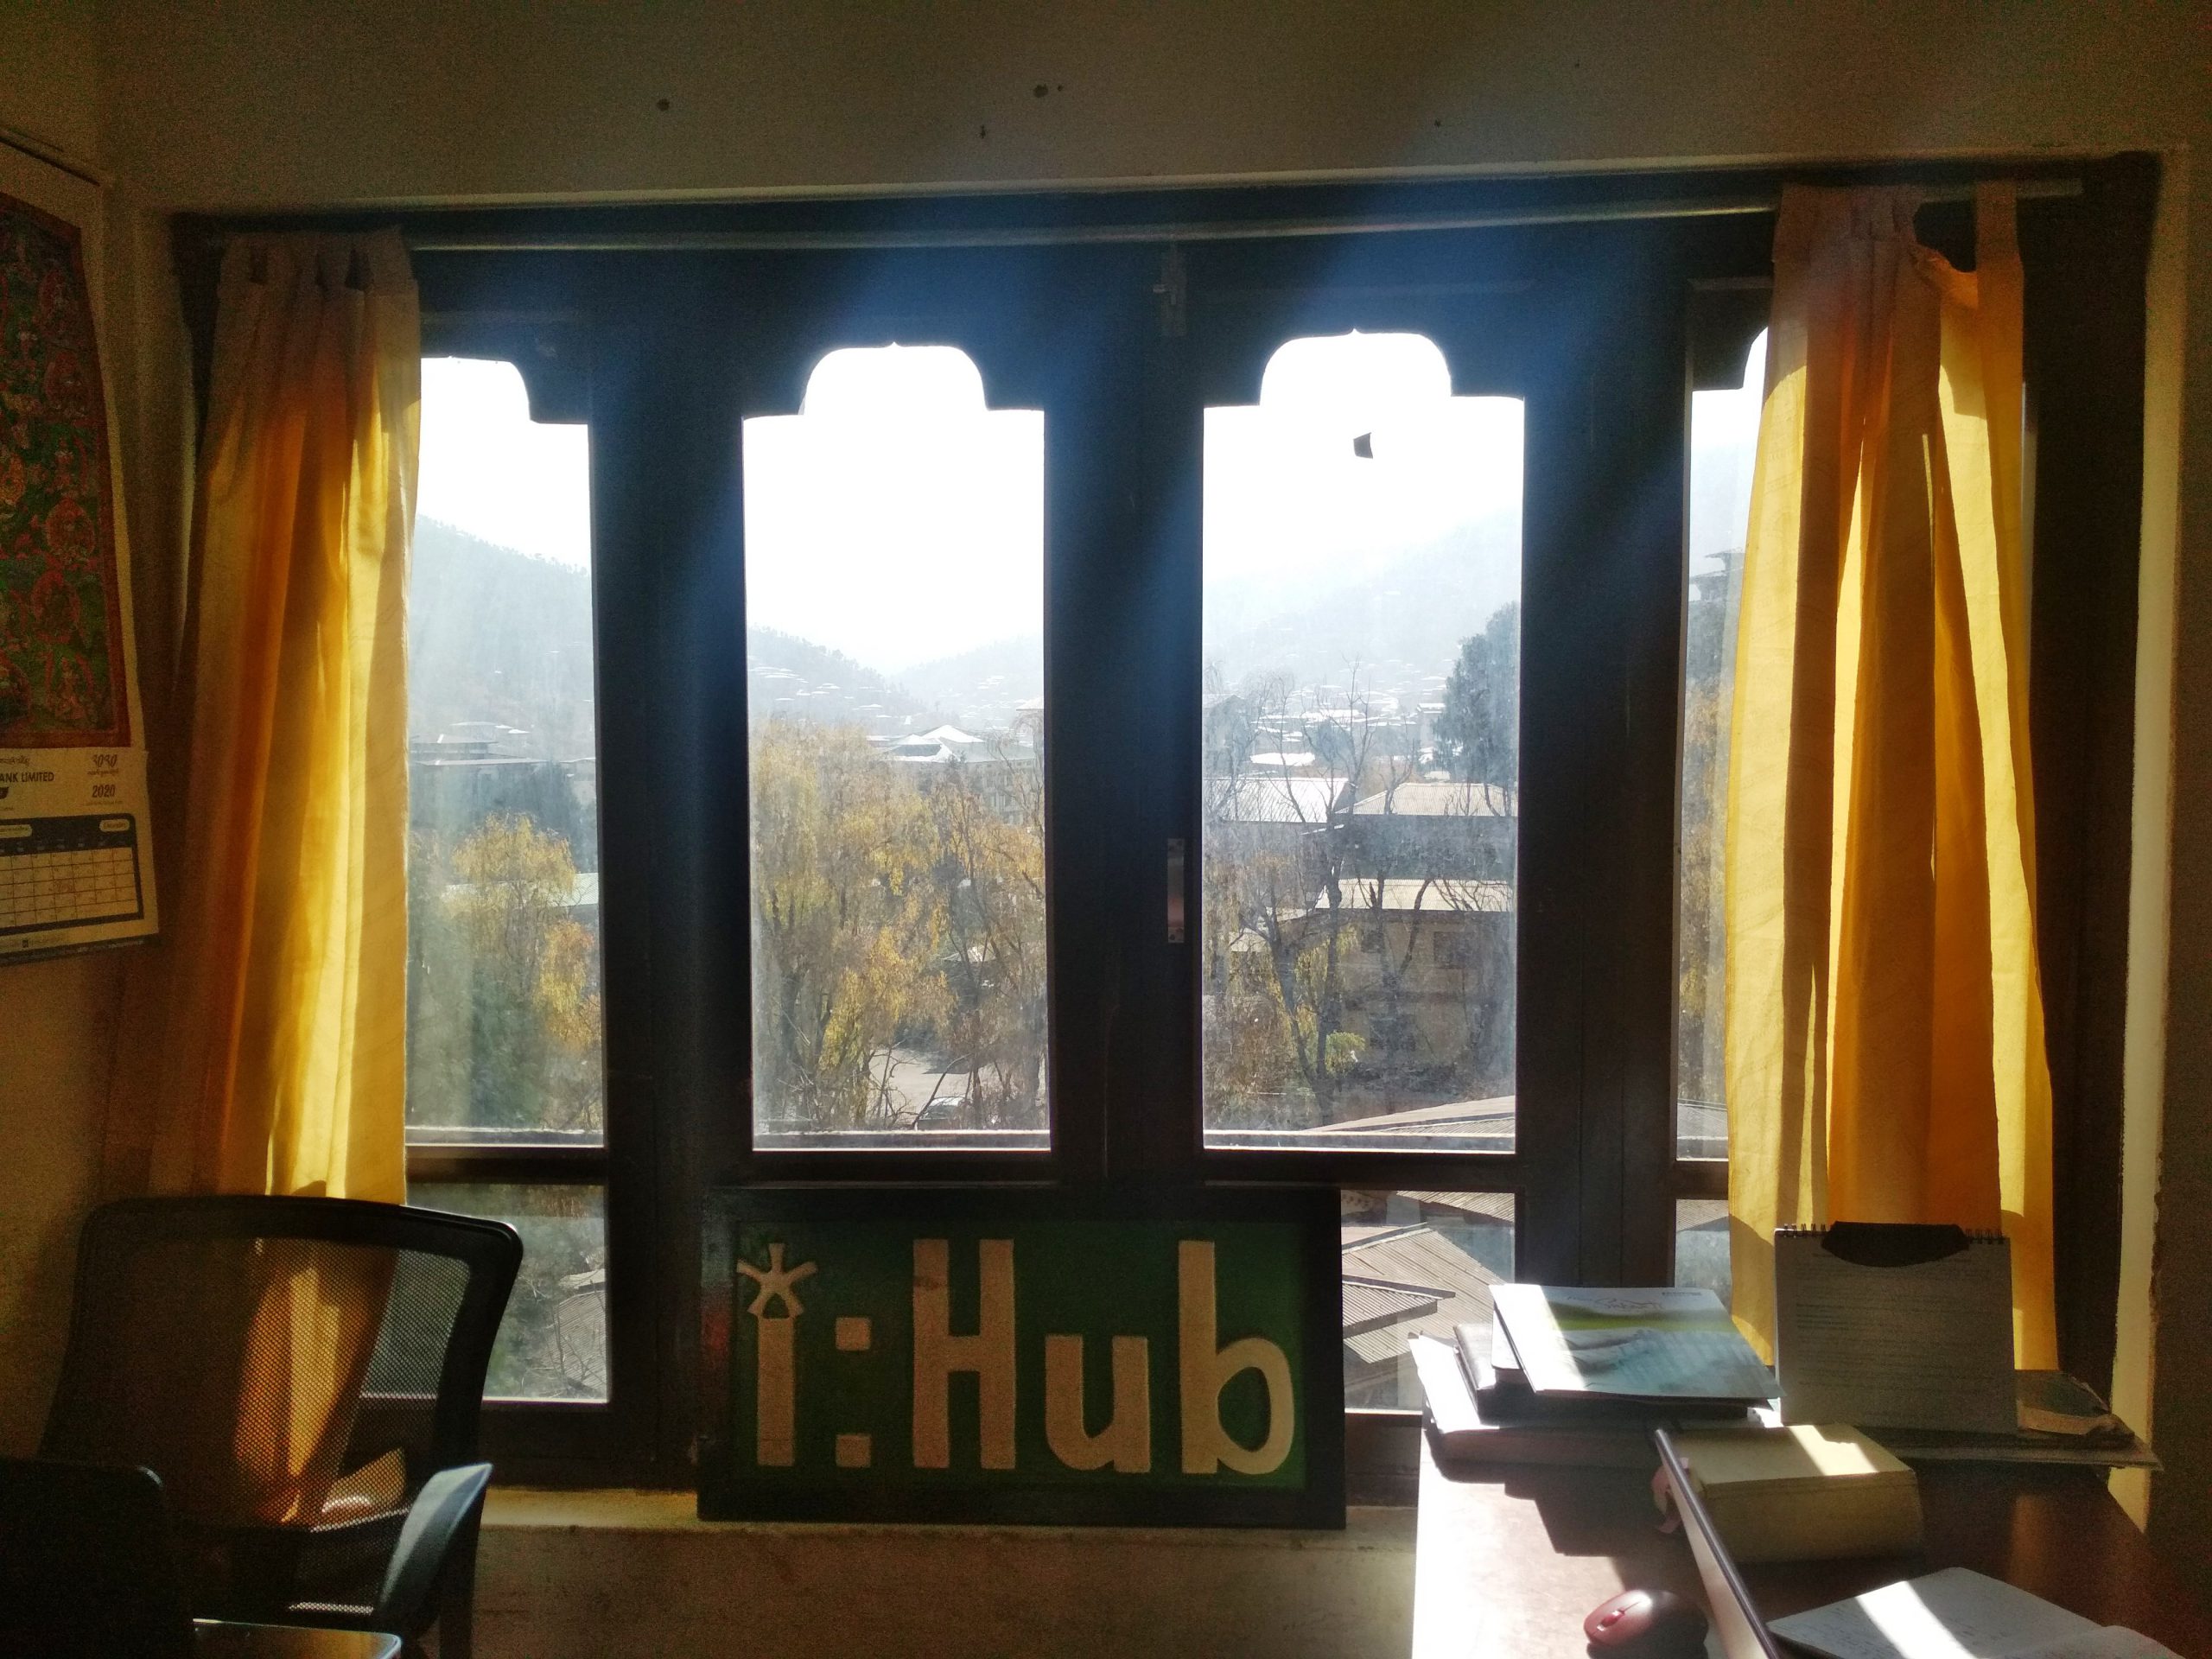 Daylight and lighting analysis of I-HUB Building